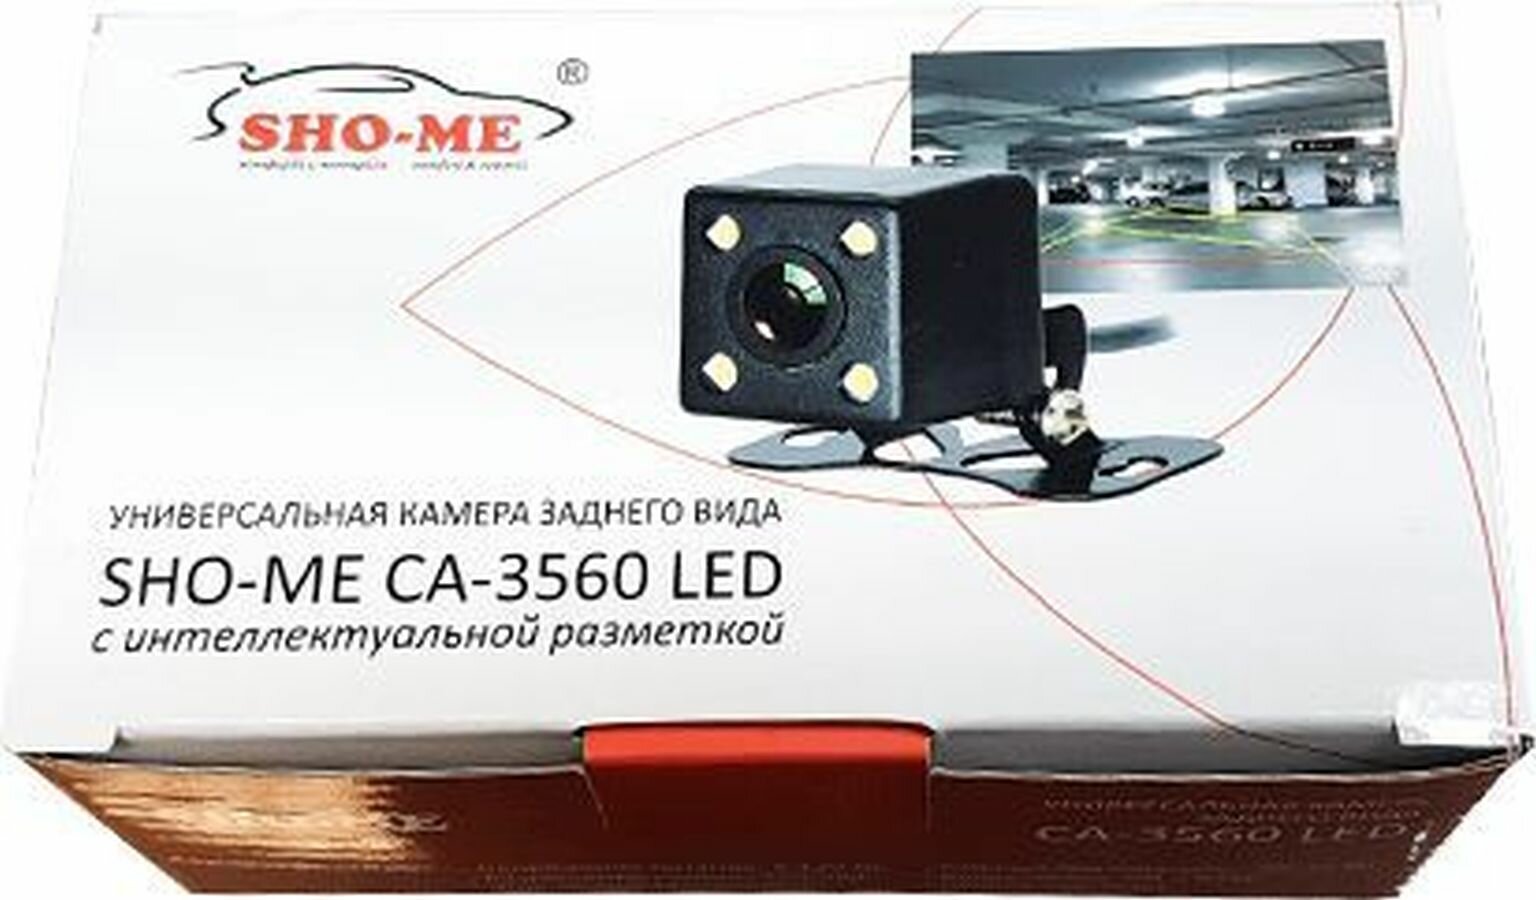 Sho-me СА-3560 LED - фото №10